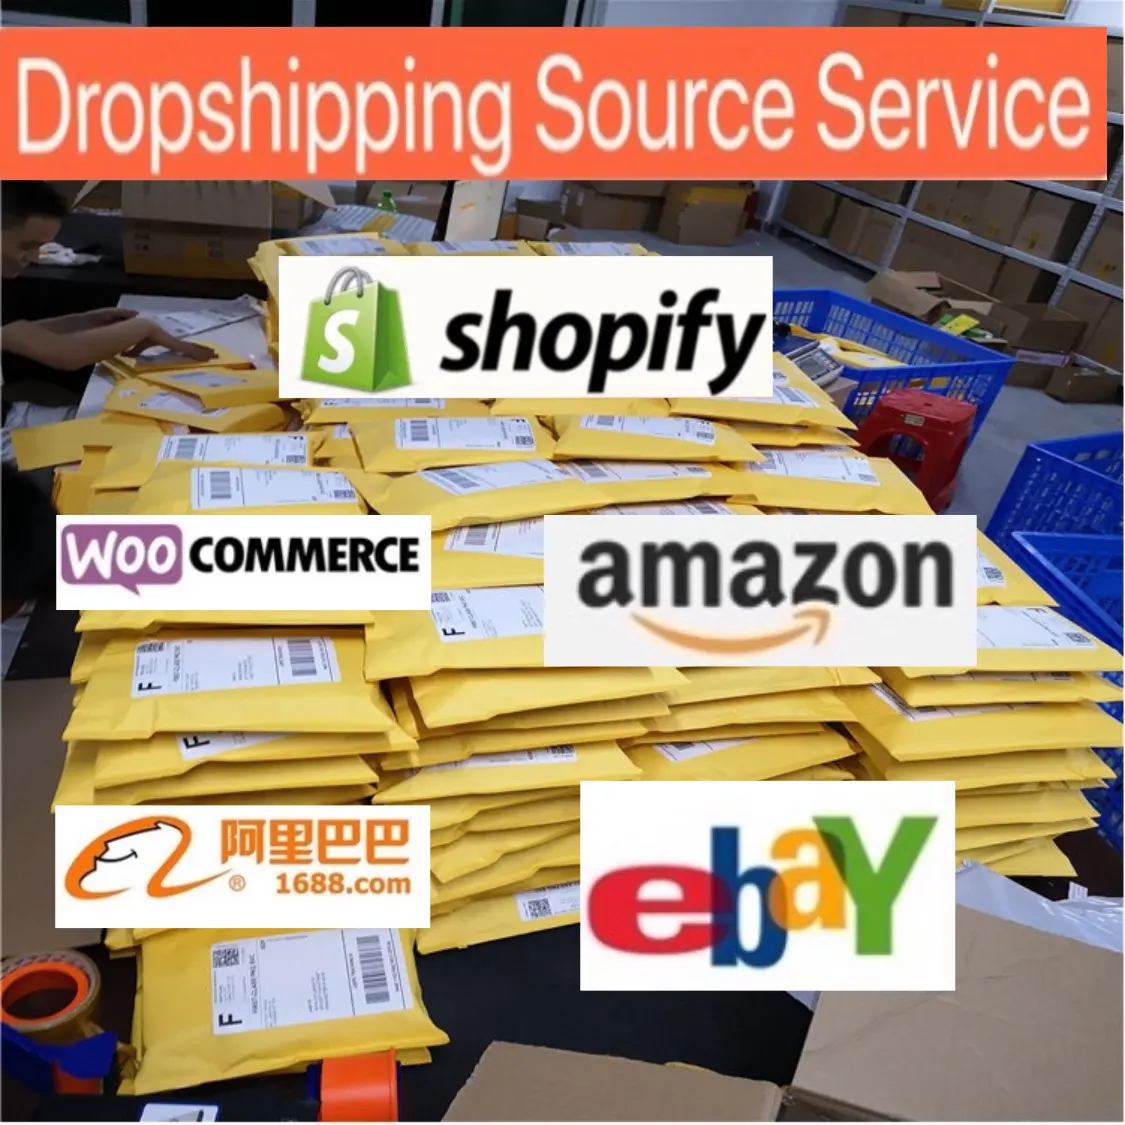 ซัพพลายเออร์ตัวแทนการดรอปชิปของจีนและศูนย์การปฏิบัติตามคำสั่งซื้อสูงสุดให้บริการแก่ Ebay Wish Shopify ร้านค้าปลีกออนไลน์